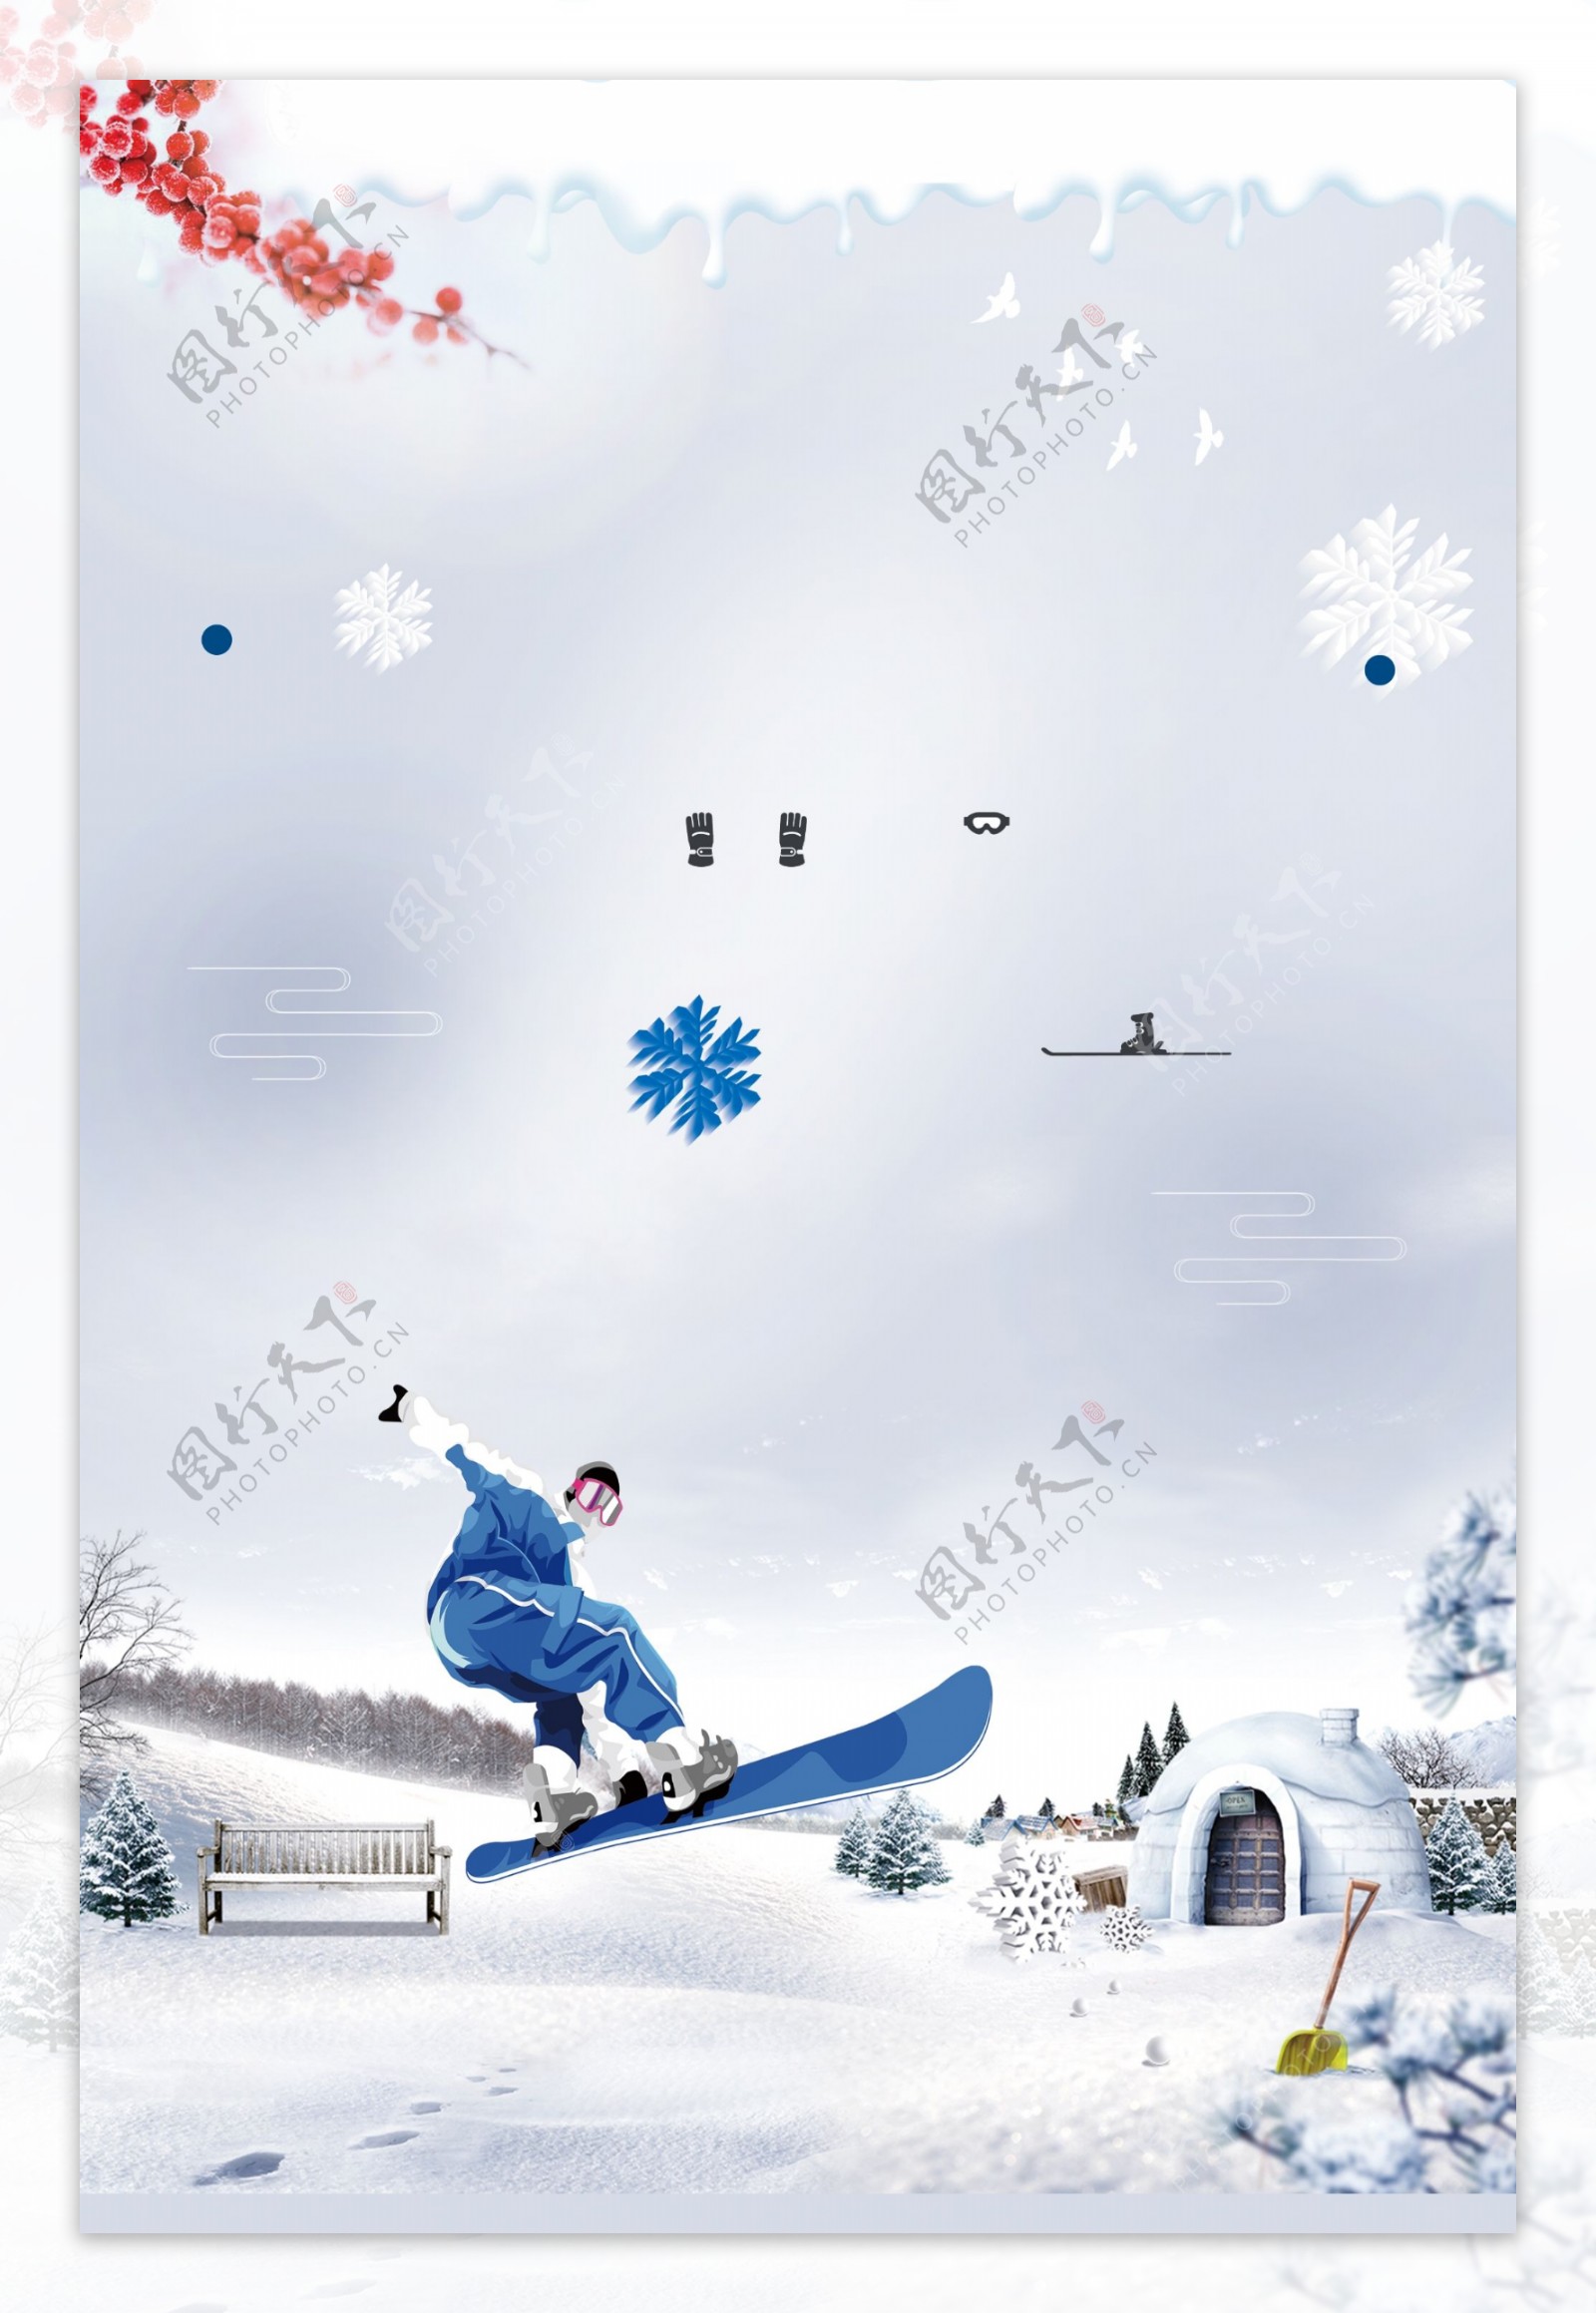 冬季雪地滑雪背景设计